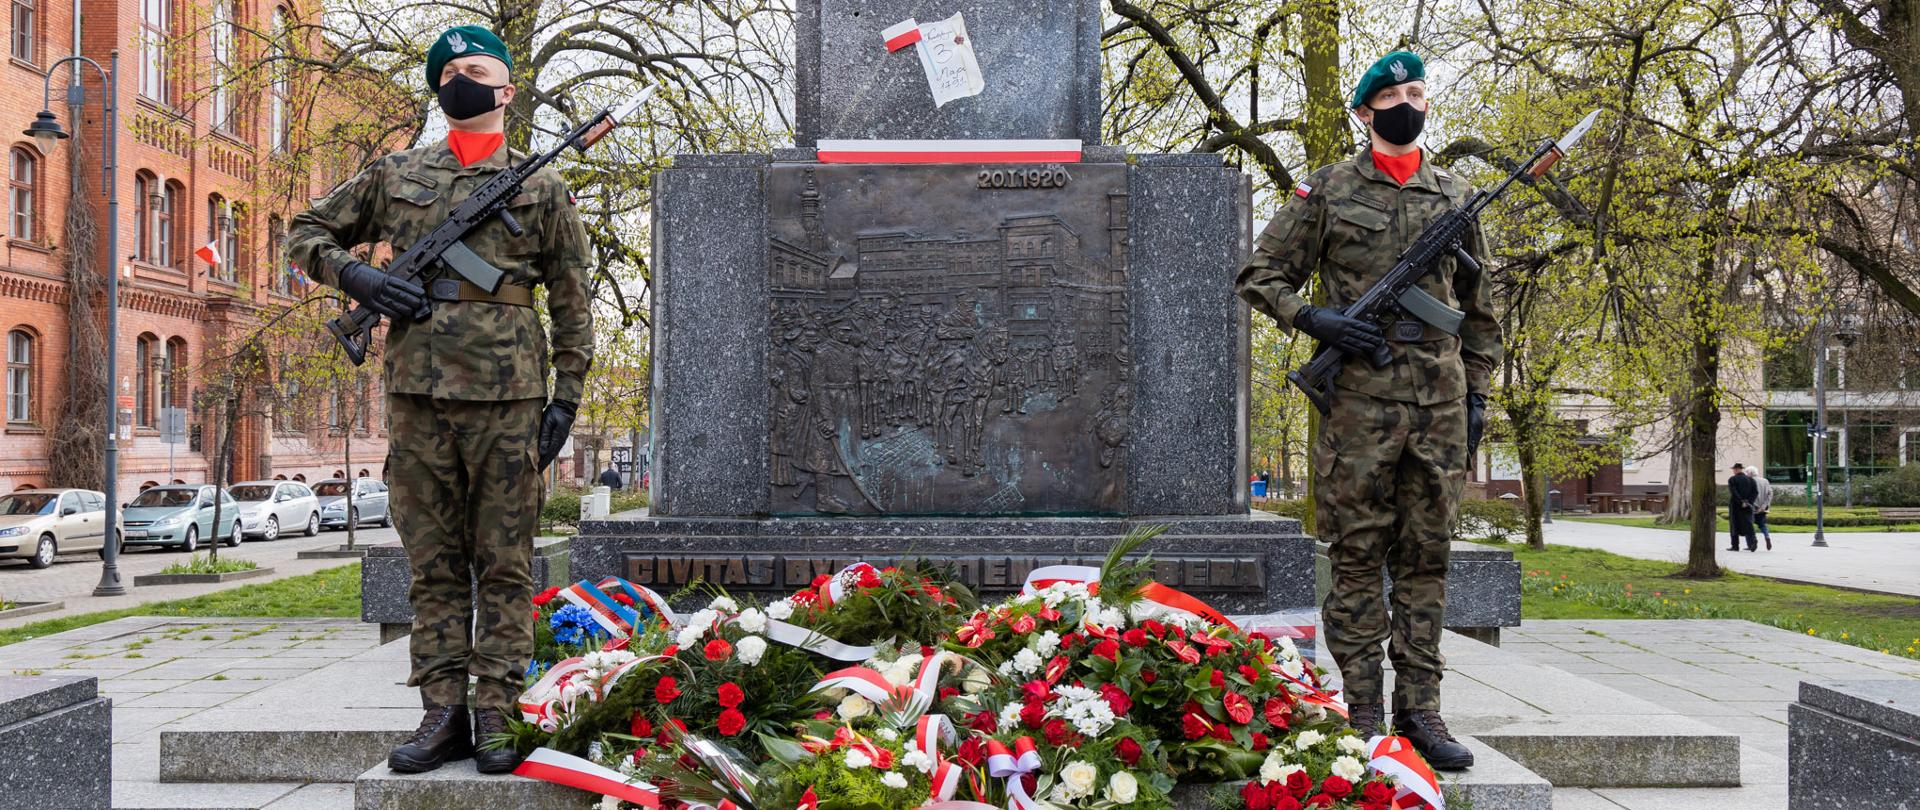 Pomnik Wolności. Przed pomnikiem leżą wiązanki kwiatów. Po prawej i lewej stronie stoją żołnierze na warcie.